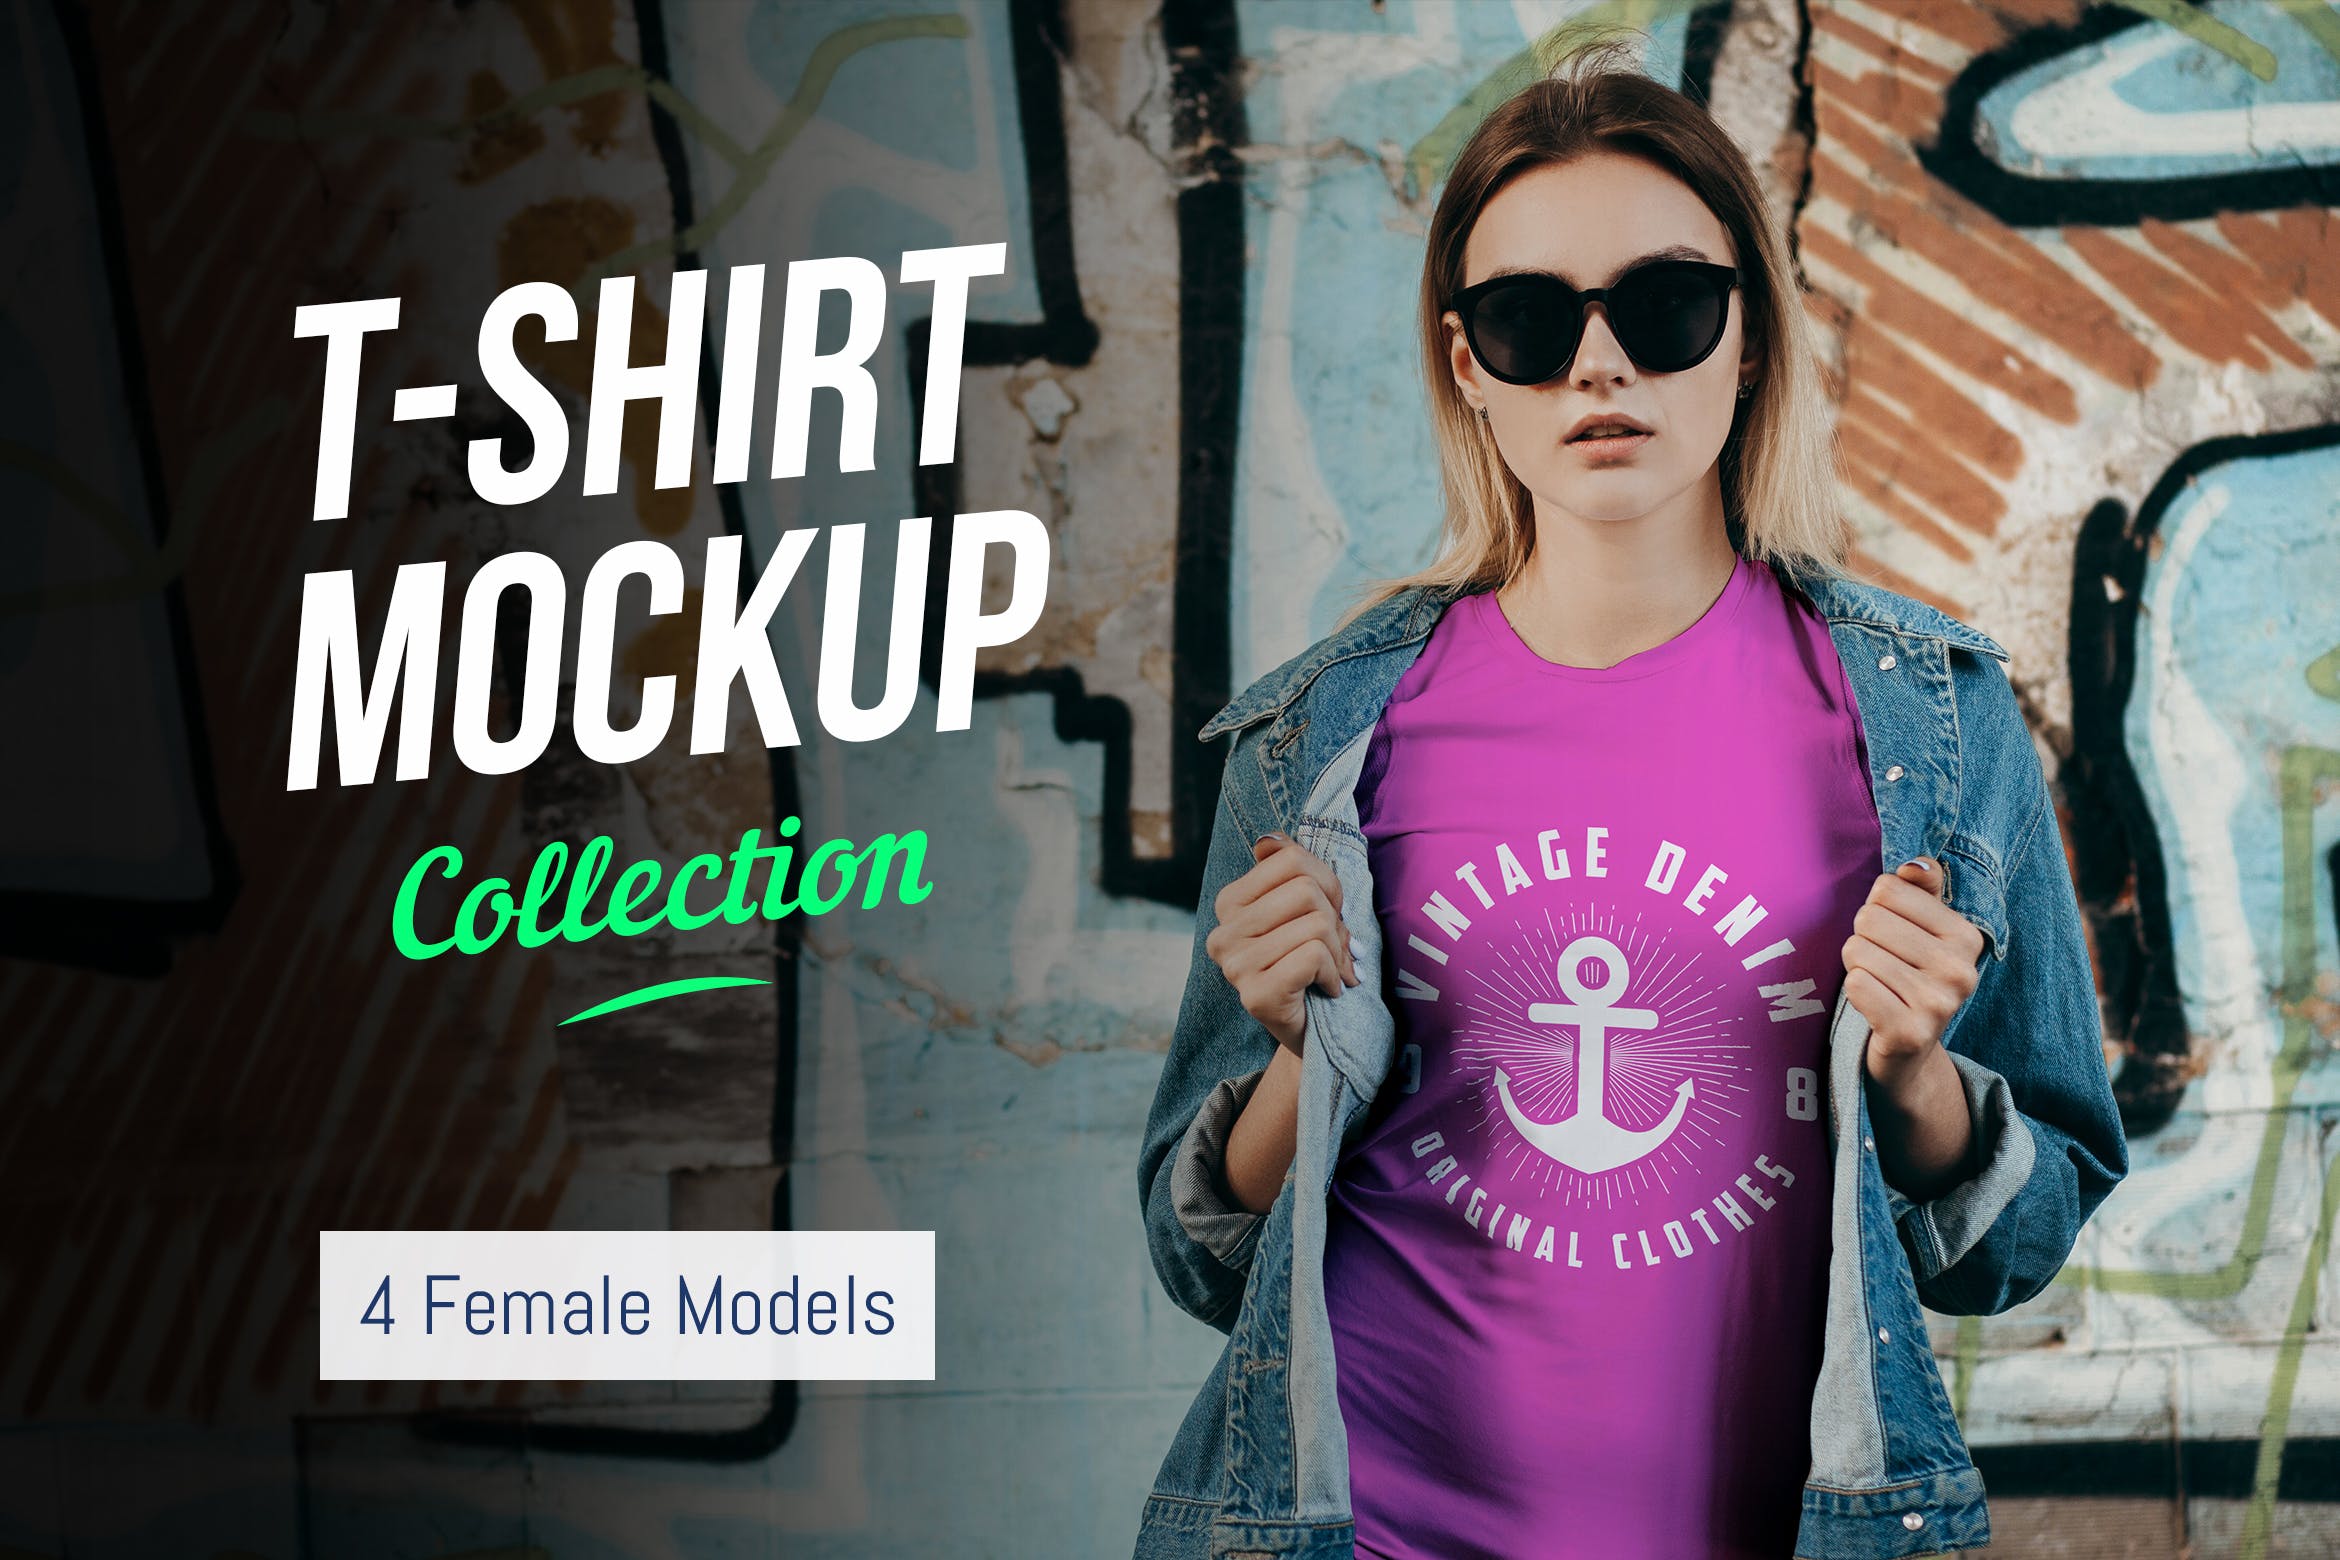 女士T恤印花设计效果图样机16设计网精选合集v02 T-Shirt Mockup Collection 02插图